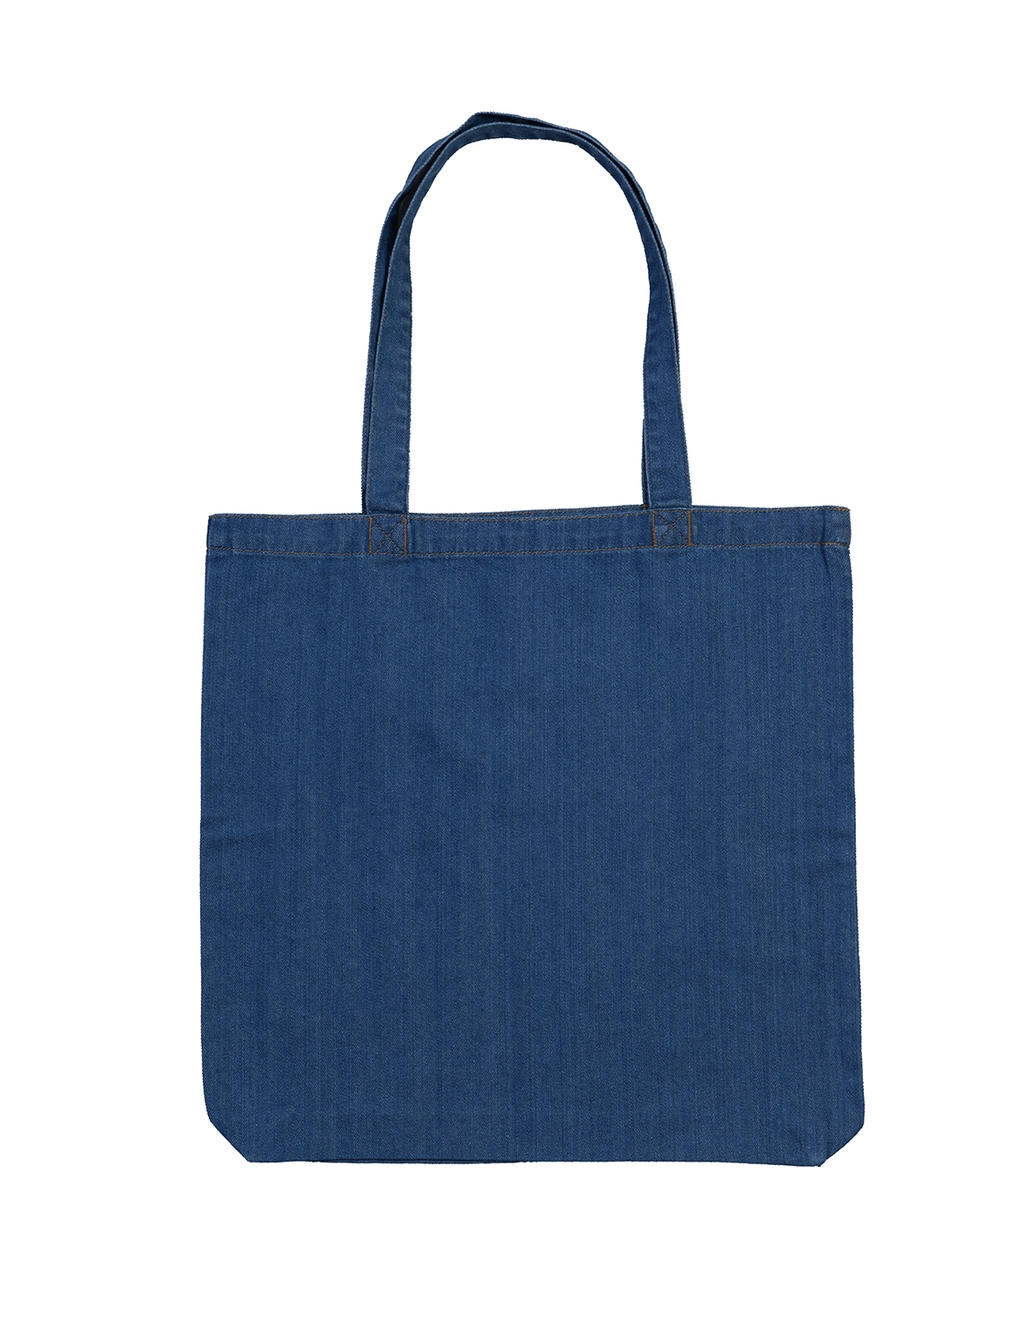 Denim Tote Bag zum Besticken und Bedrucken in der Farbe Denim Blue mit Ihren Logo, Schriftzug oder Motiv.